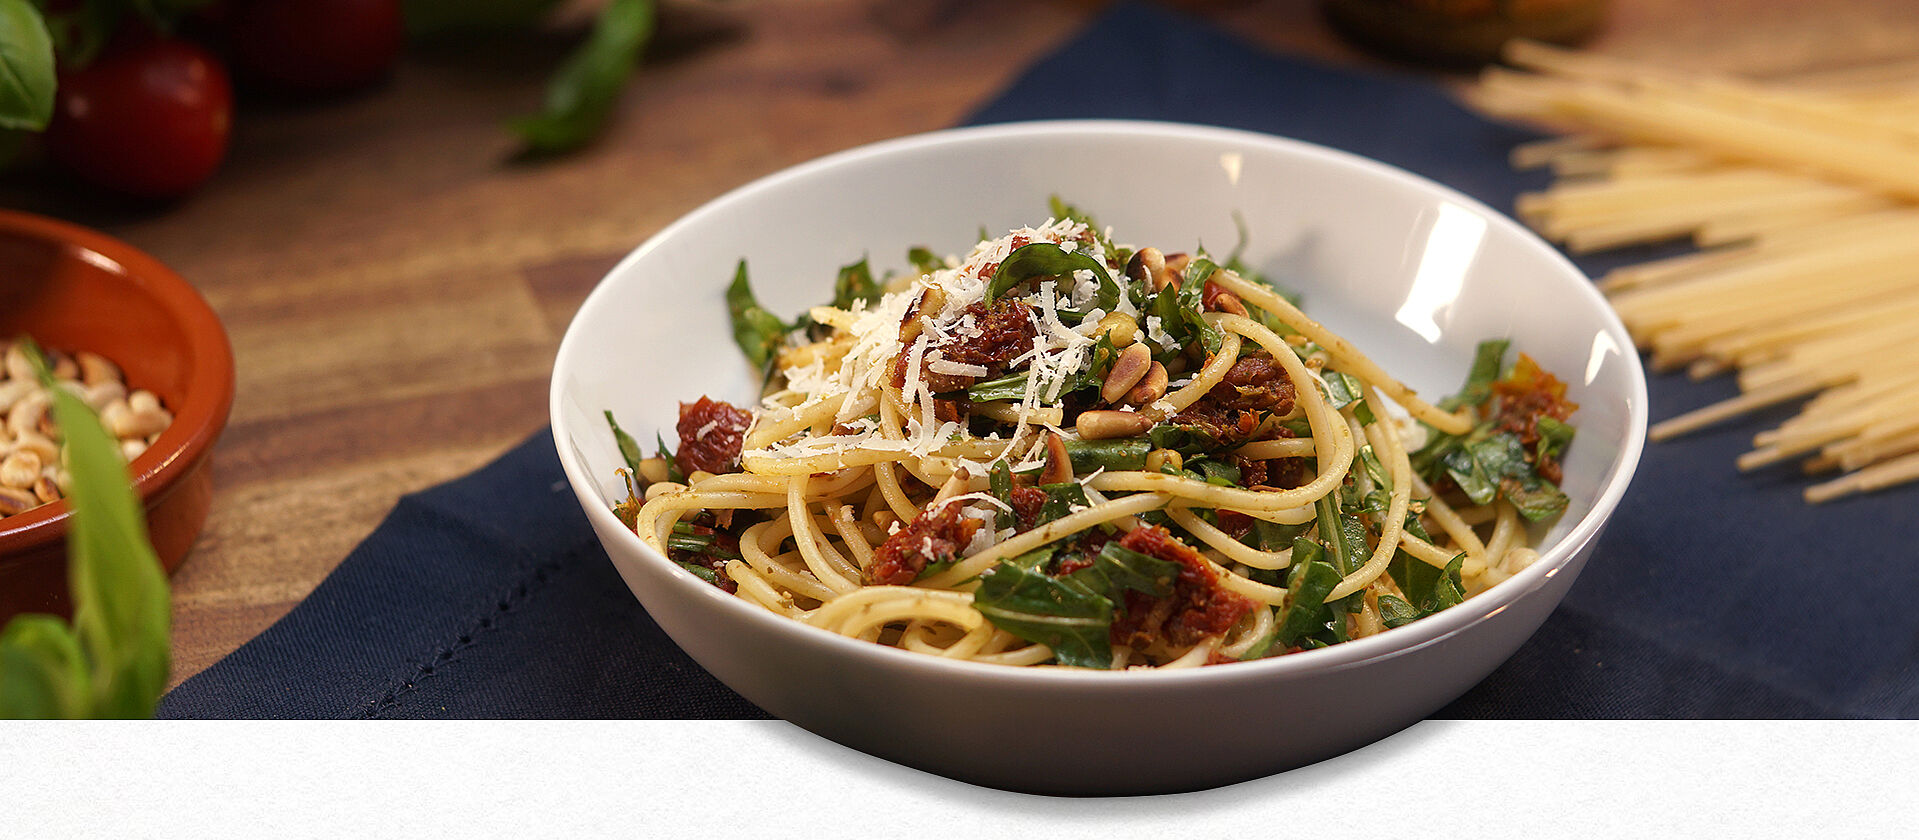 Eine Schüssel mit italienischem Spaghettisalat bestehend aus Rucola, getrockneten Tomaten, Spaghetti und Parmesan.